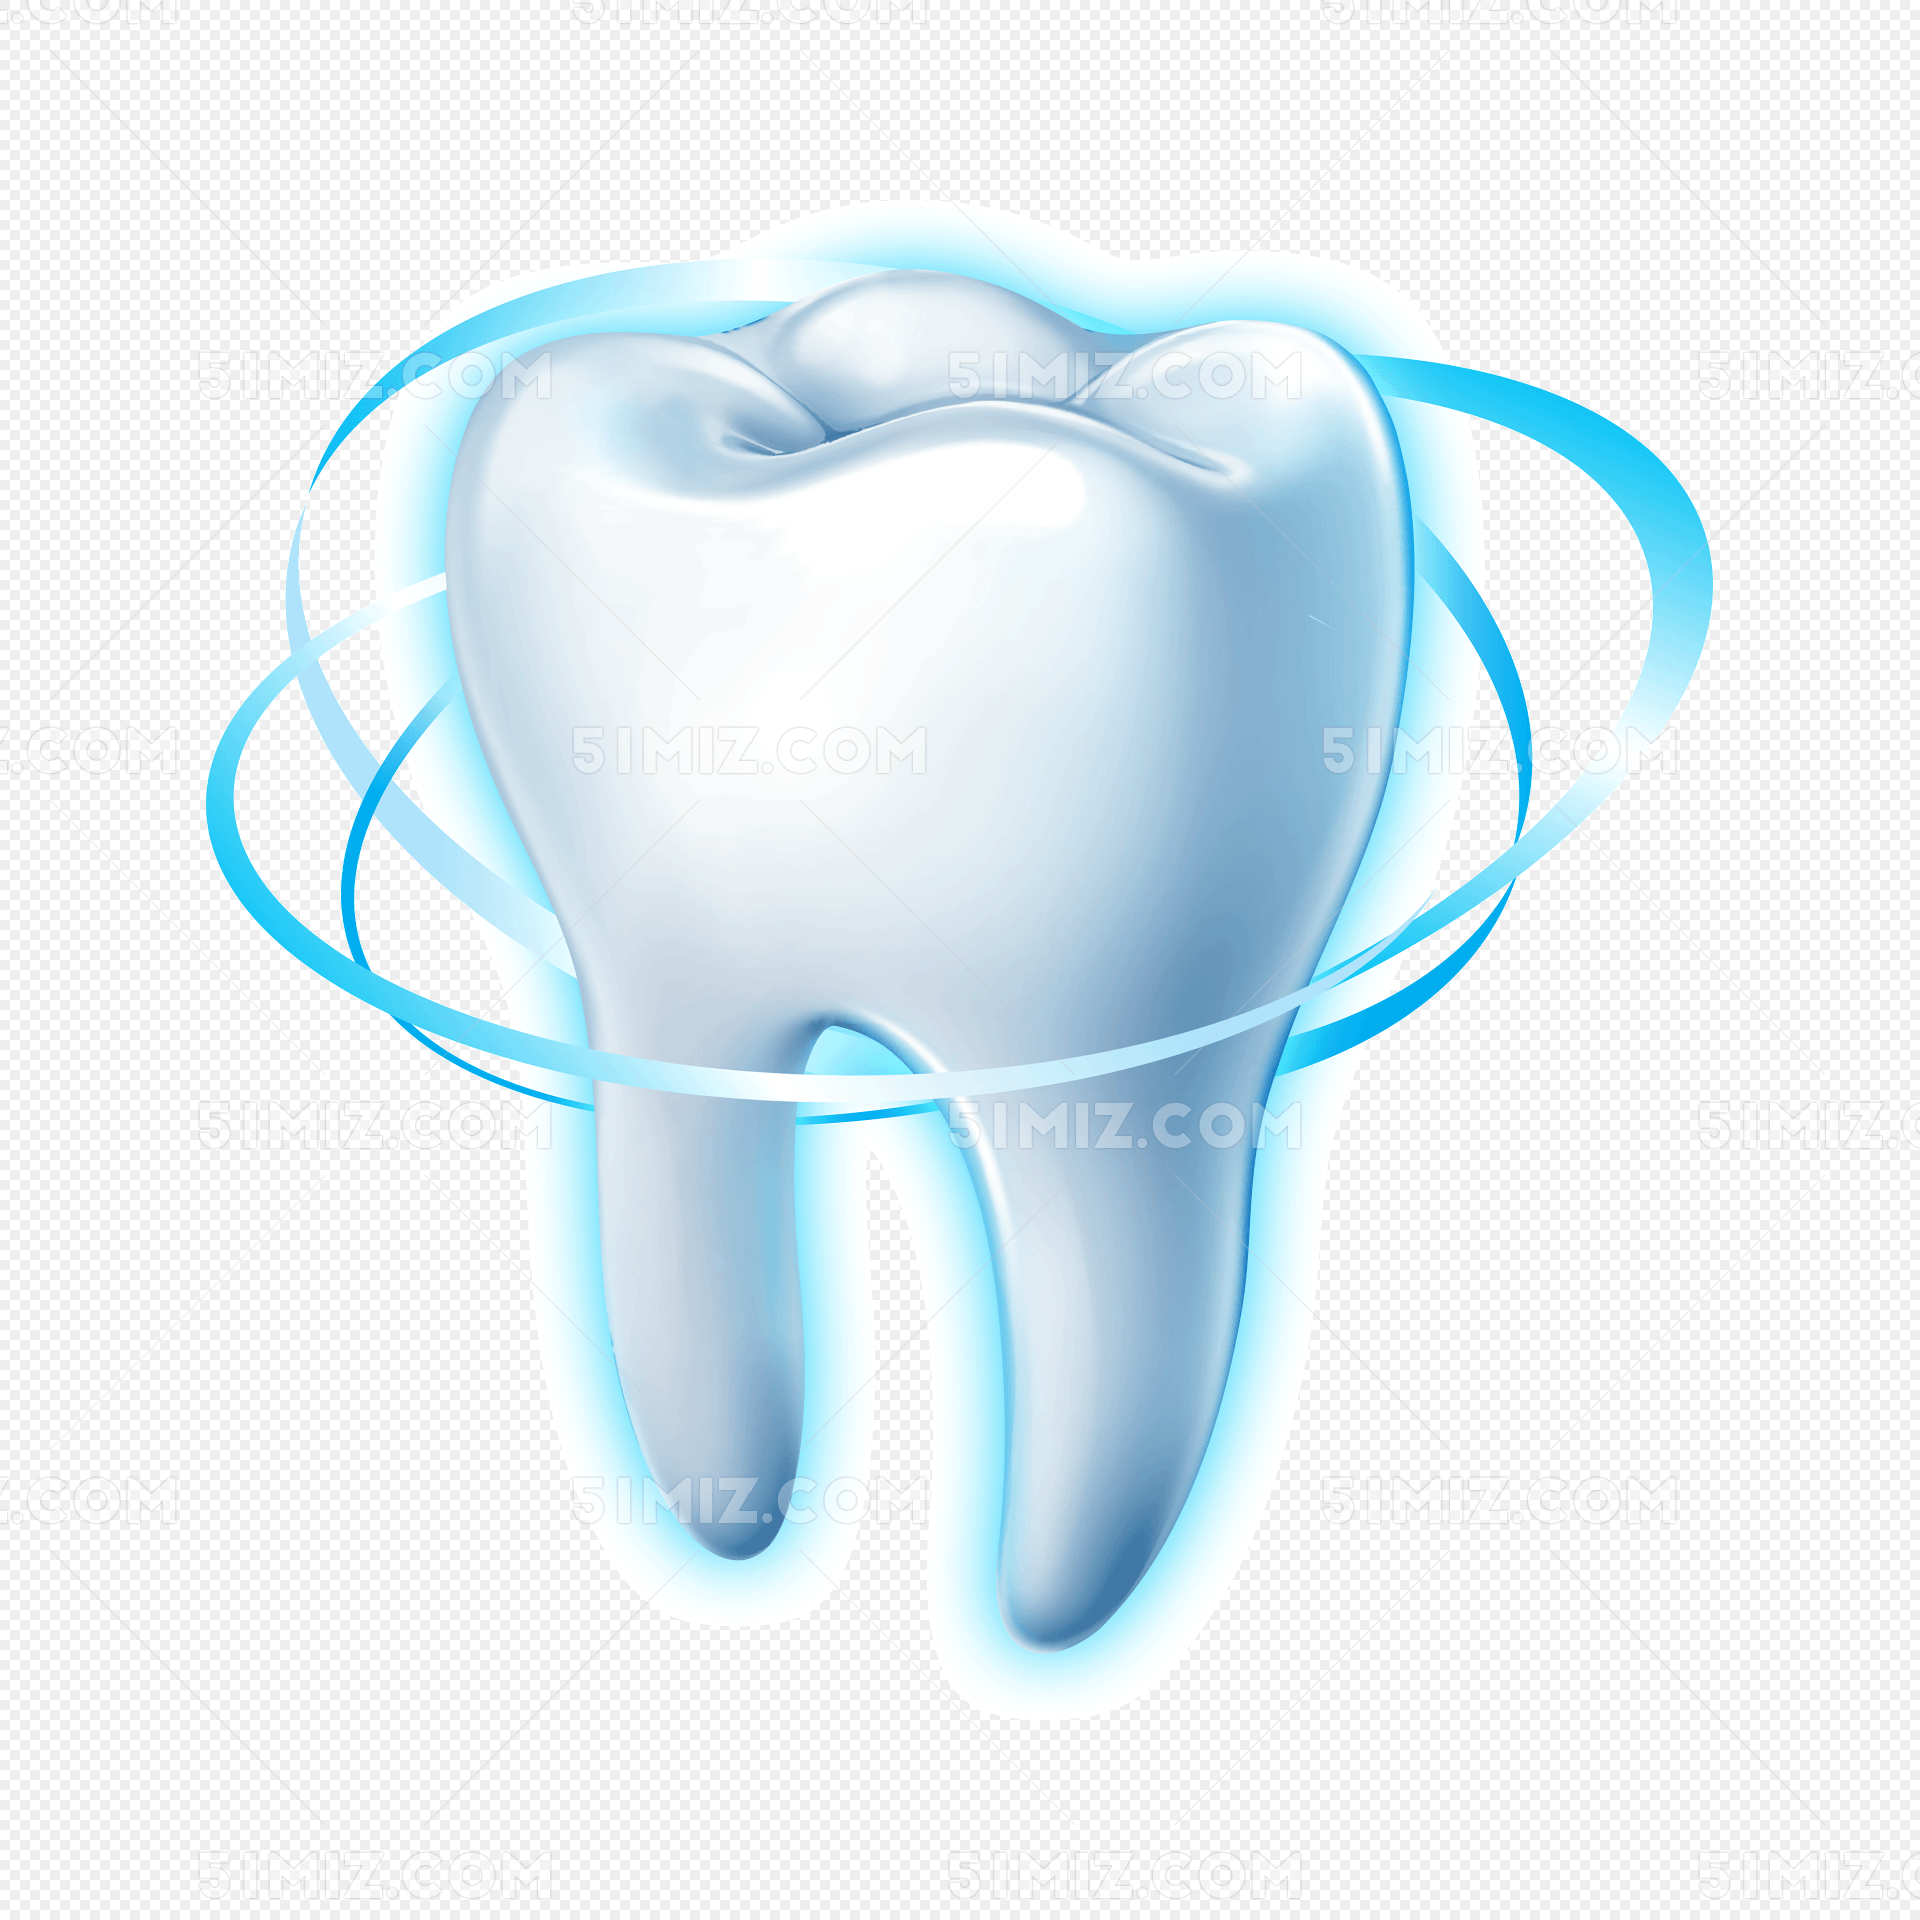 坚固牙齿保护牙齿图片素材免费下载_觅知网